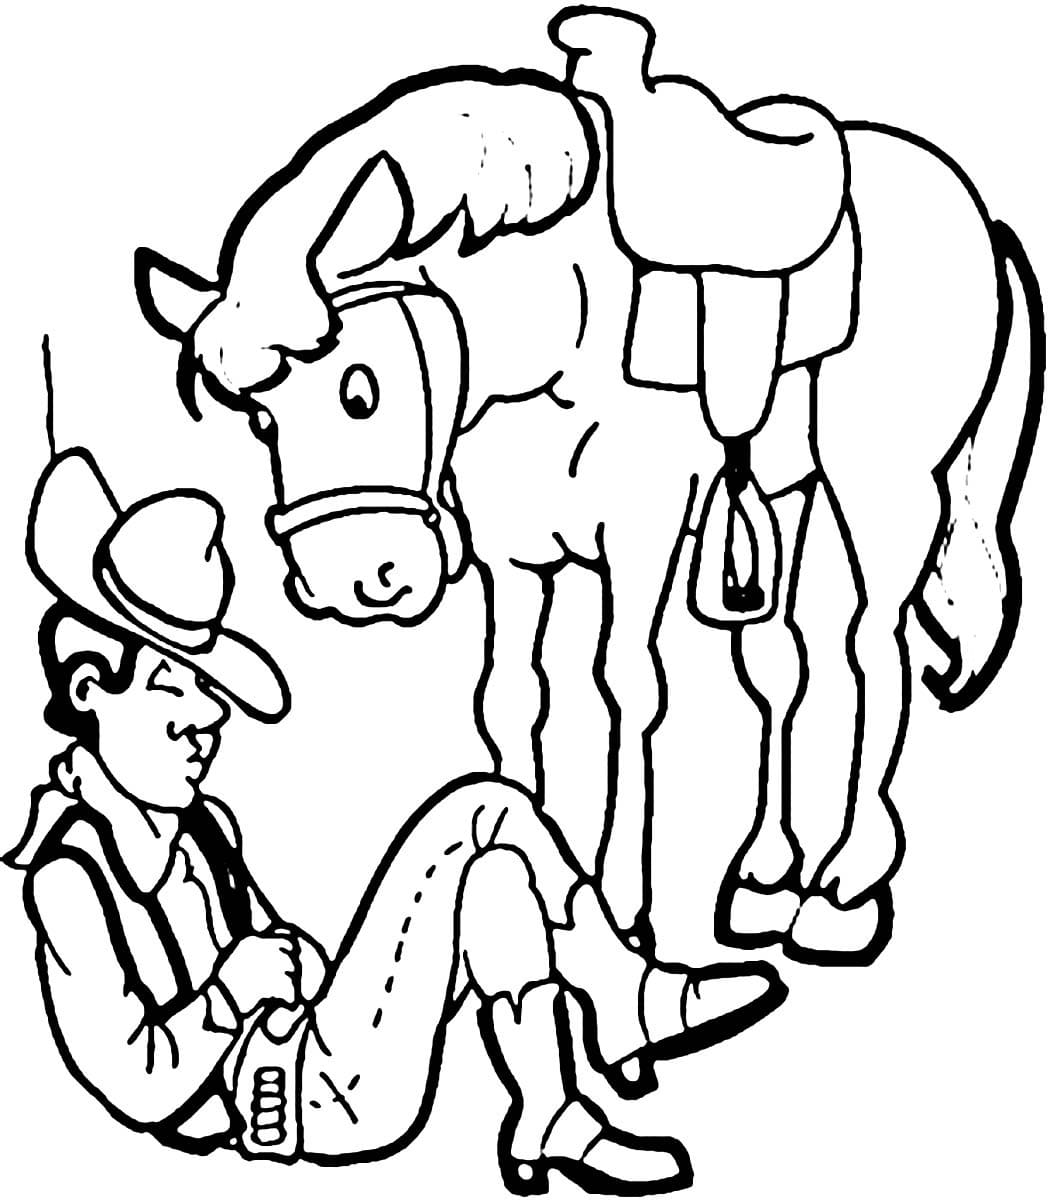 Cowboy Endormi coloring page